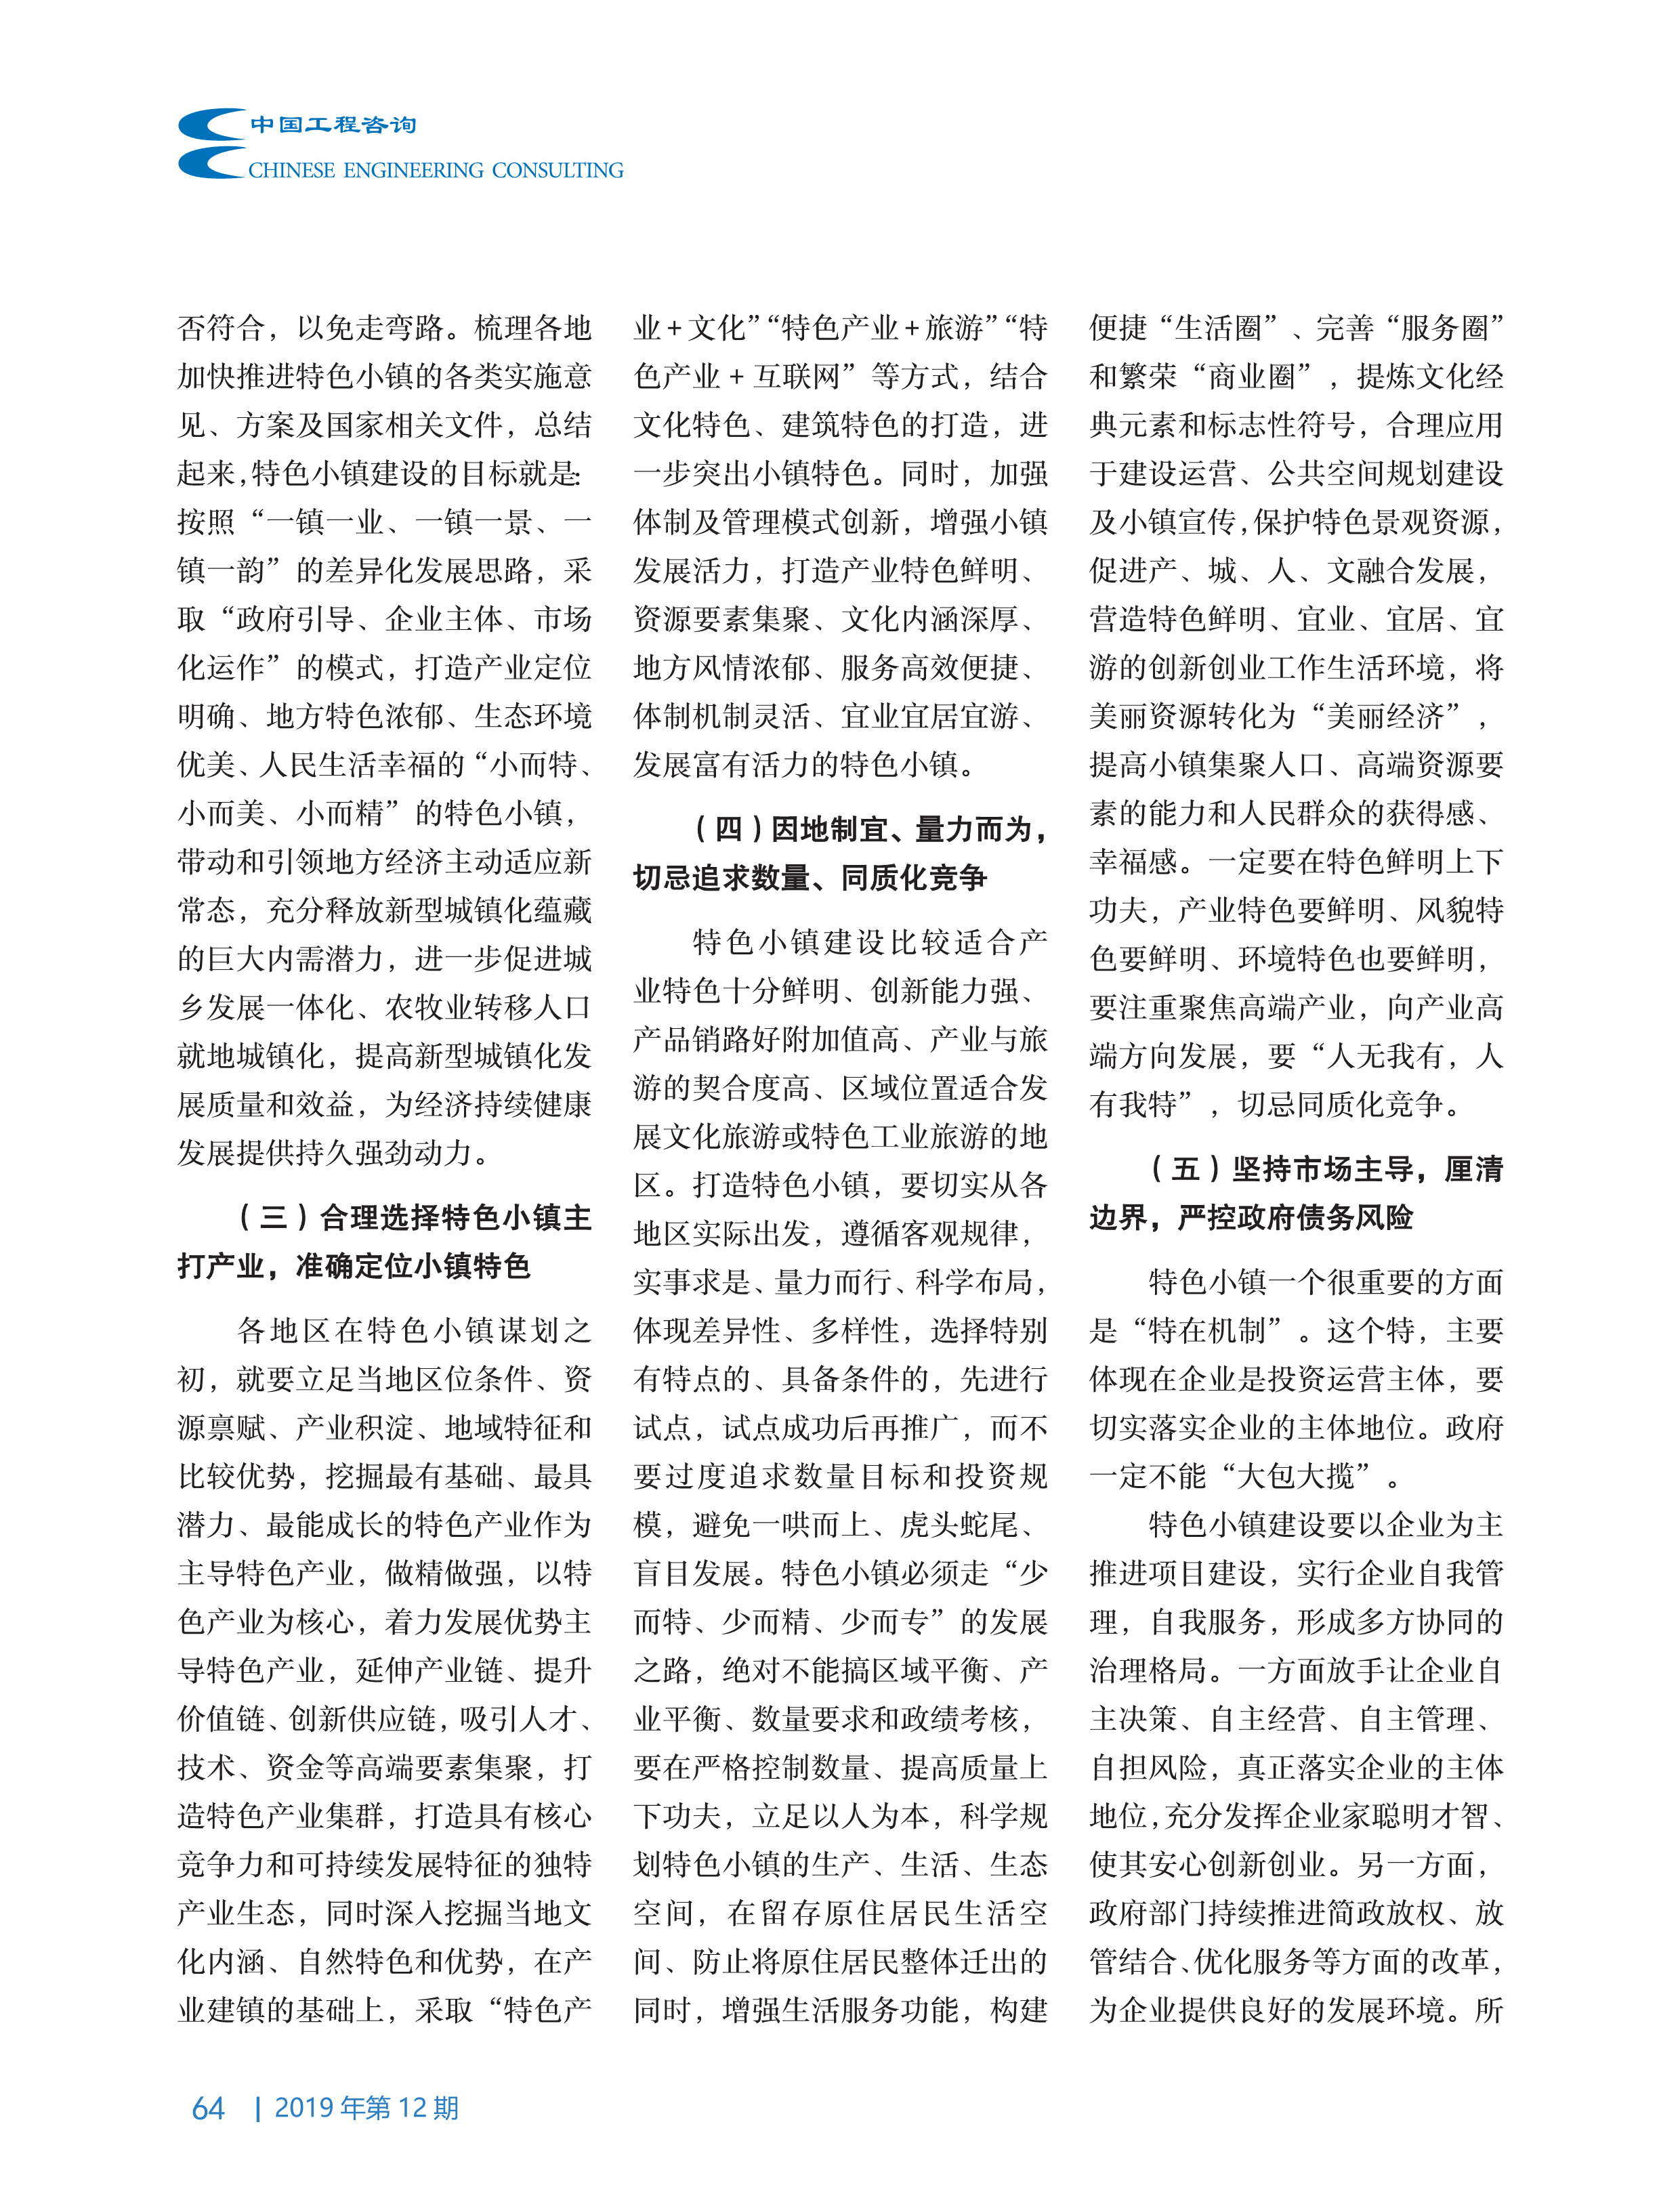 中国工程咨询2019第12期_64